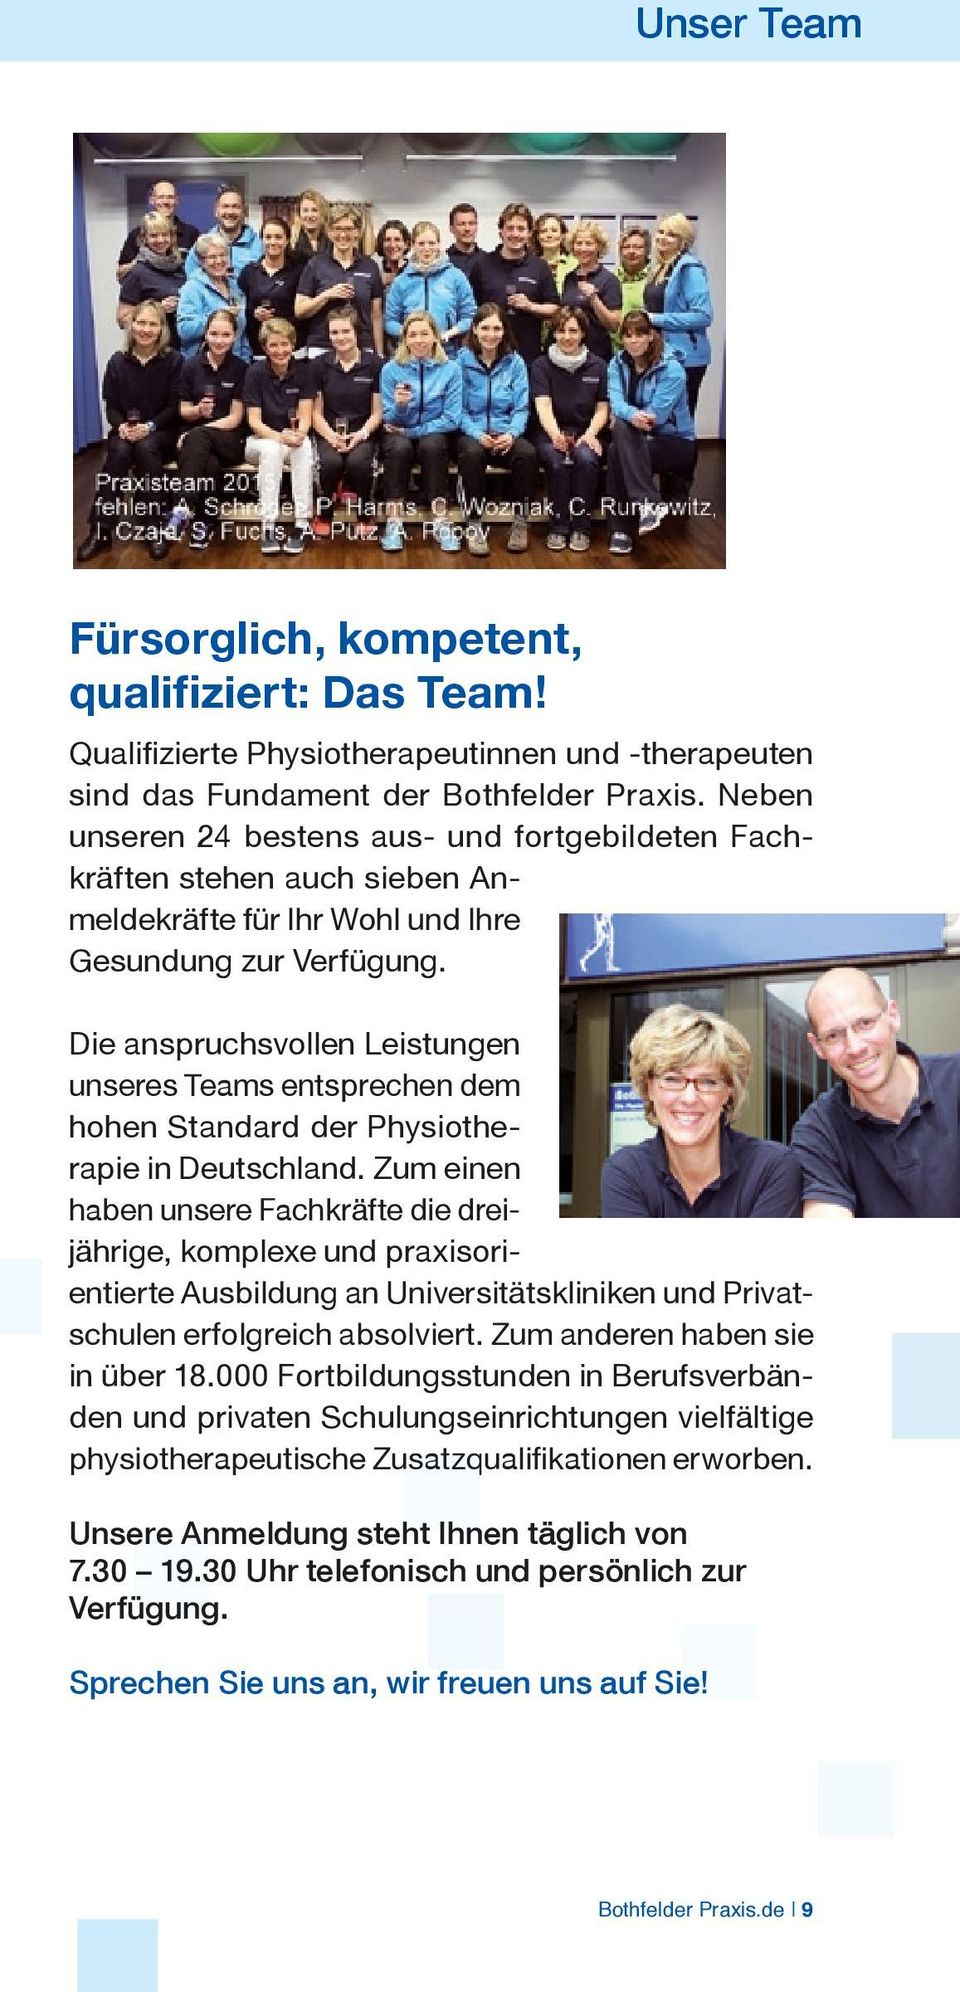 Die anspruchsvollen Leistungen unseres Teams entsprechen dem hohen Standard der Physiotherapie in Deutschland.